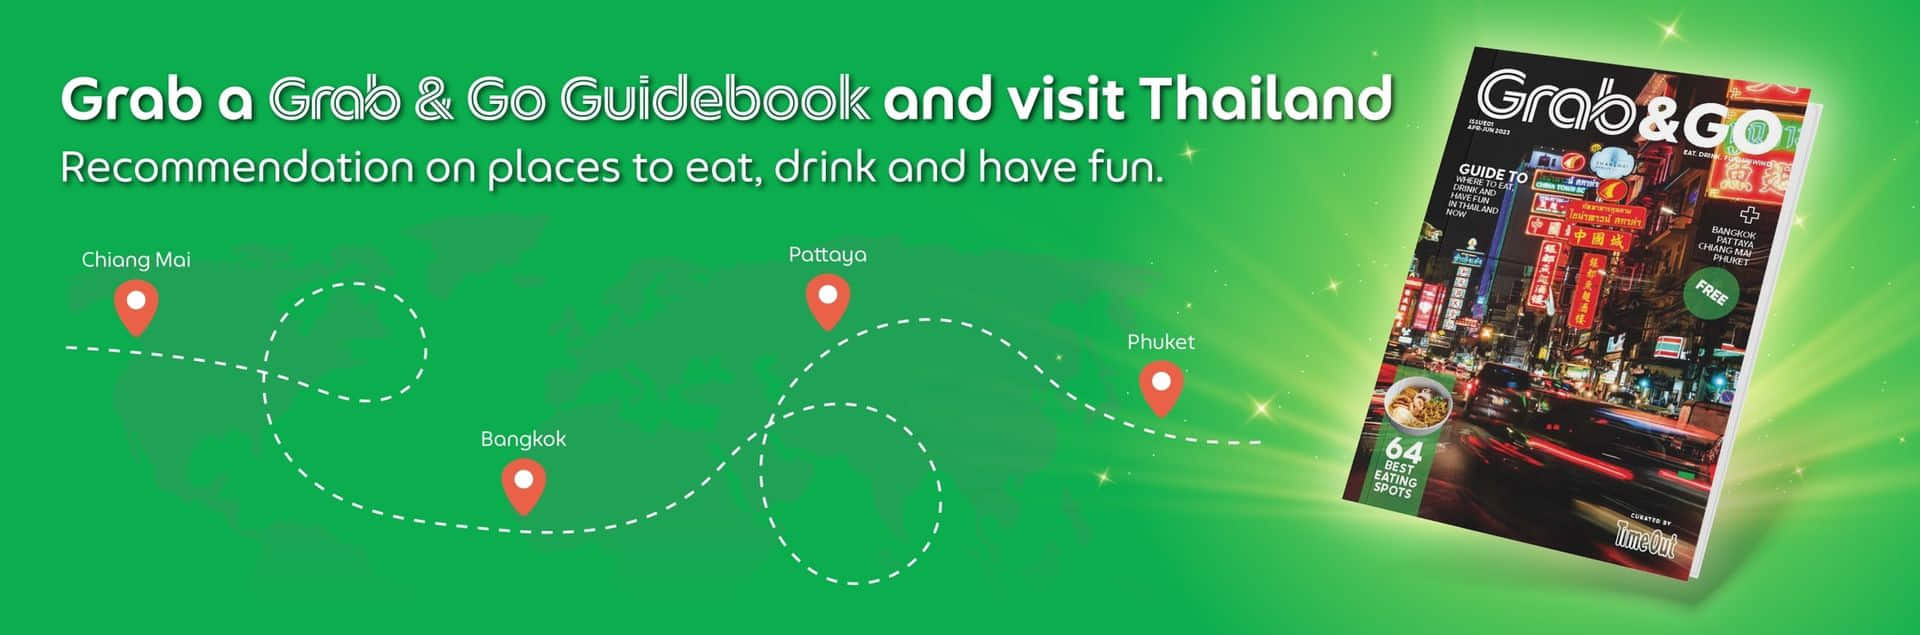 Управління туризму Таїланду і Grab запускають промо-кампанію